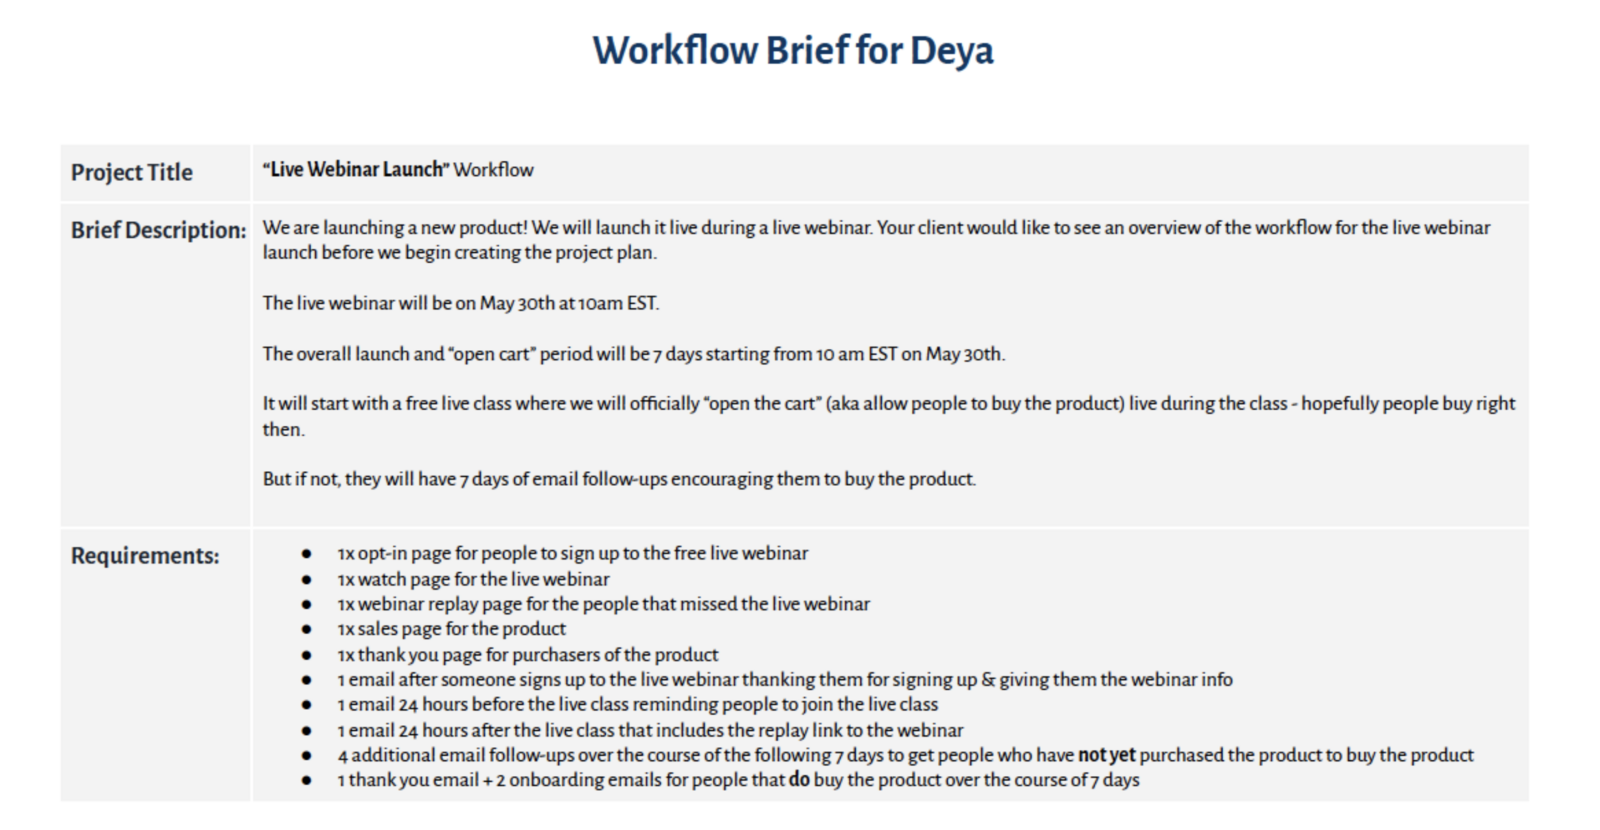 Workflow Brief